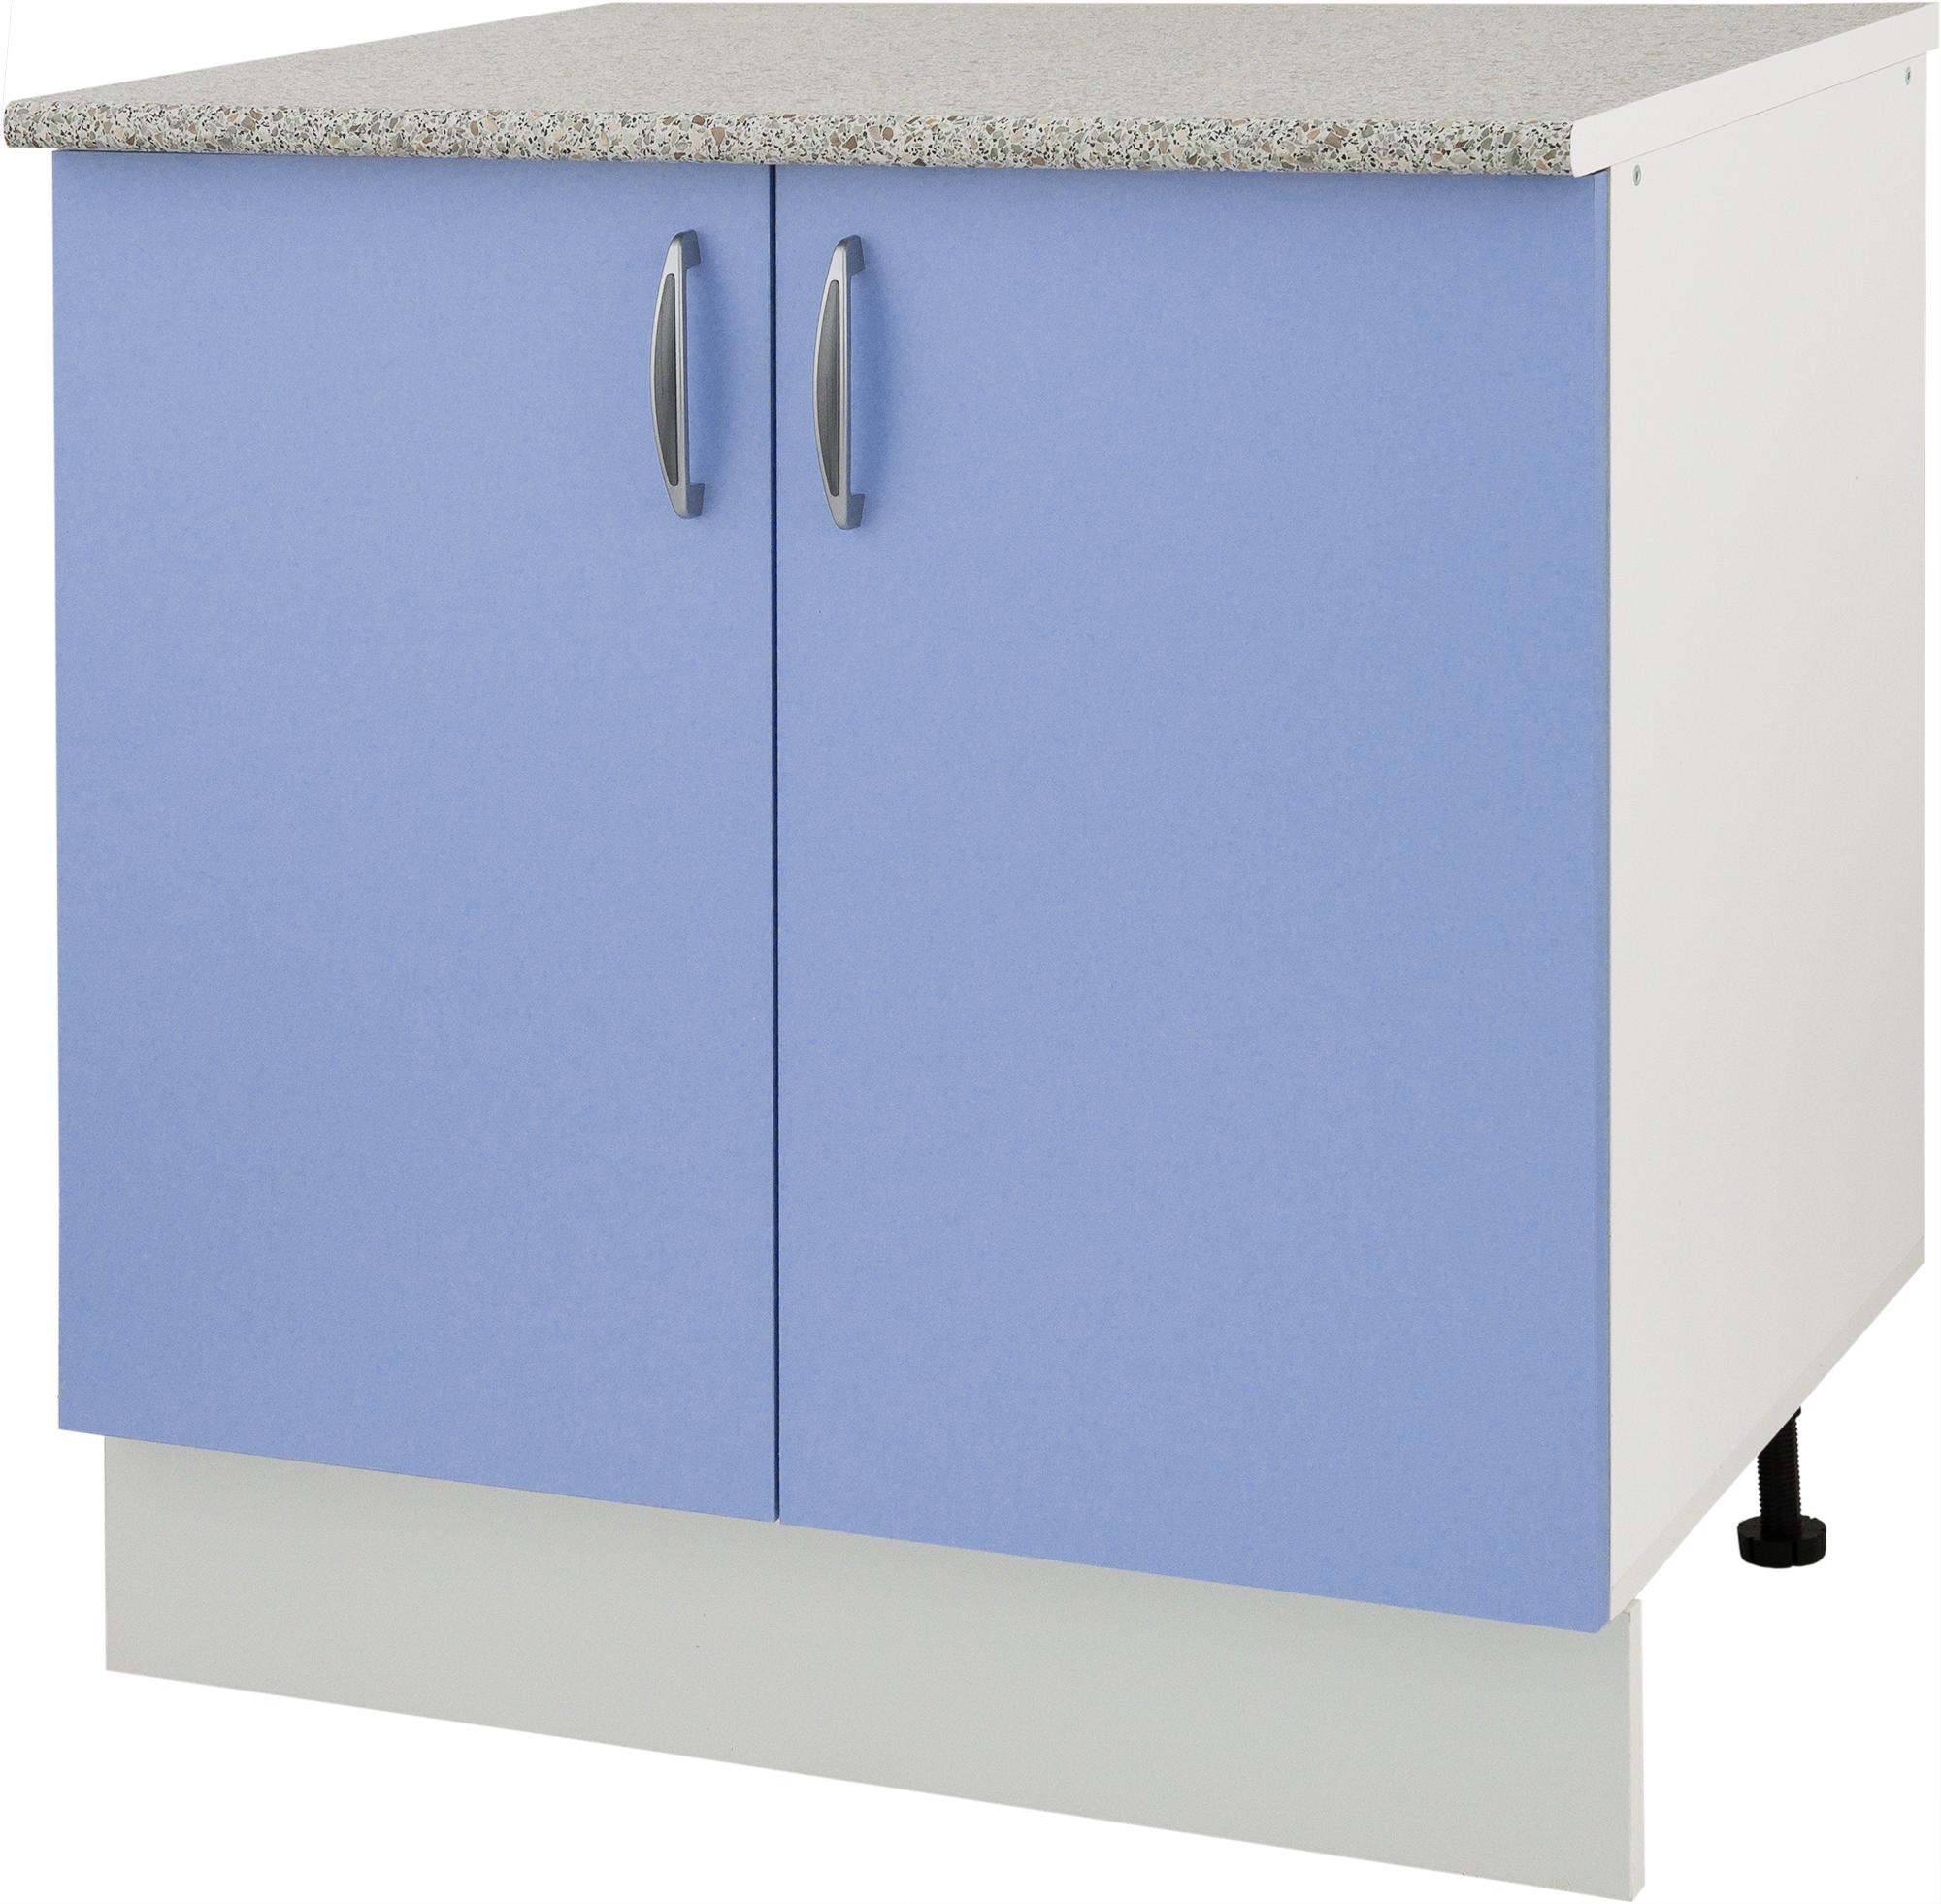 Напольный модуль для кухни. Шкаф напольный Лагуна СП 85х80 см цвет голубой. Шкаф кухонный напольный 80 см Леруа Мерлен. Шкаф напольный «Лагуна д». Кухня Лагуна Леруа Мерлен.